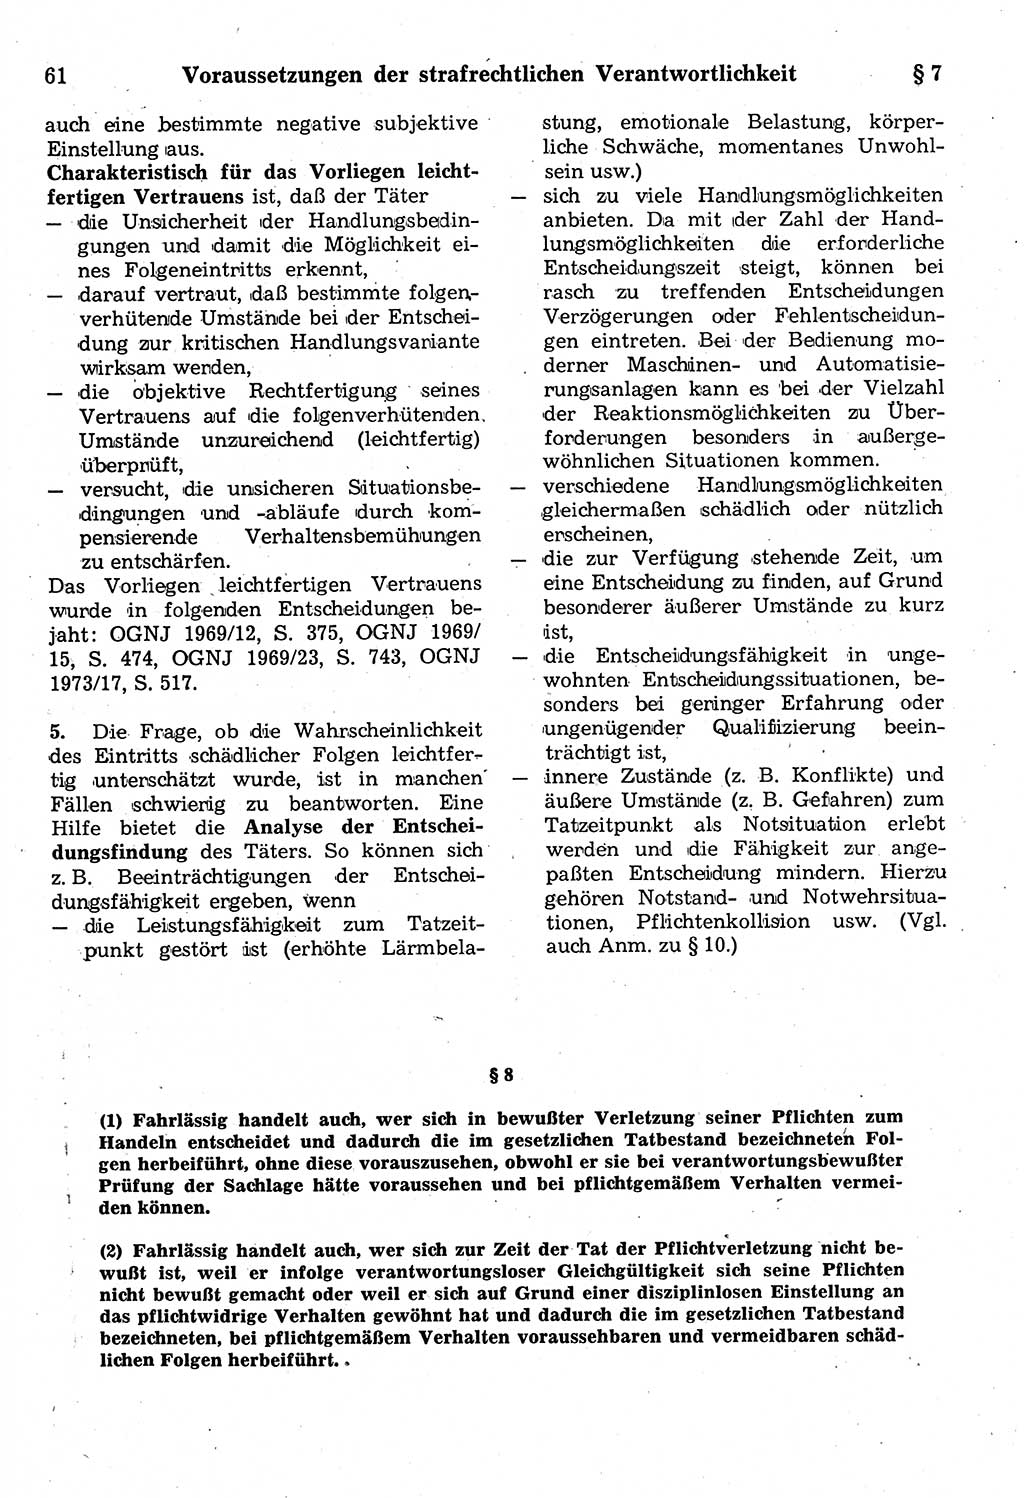 Strafrecht der Deutschen Demokratischen Republik (DDR), Kommentar zum Strafgesetzbuch (StGB) 1987, Seite 61 (Strafr. DDR Komm. StGB 1987, S. 61)